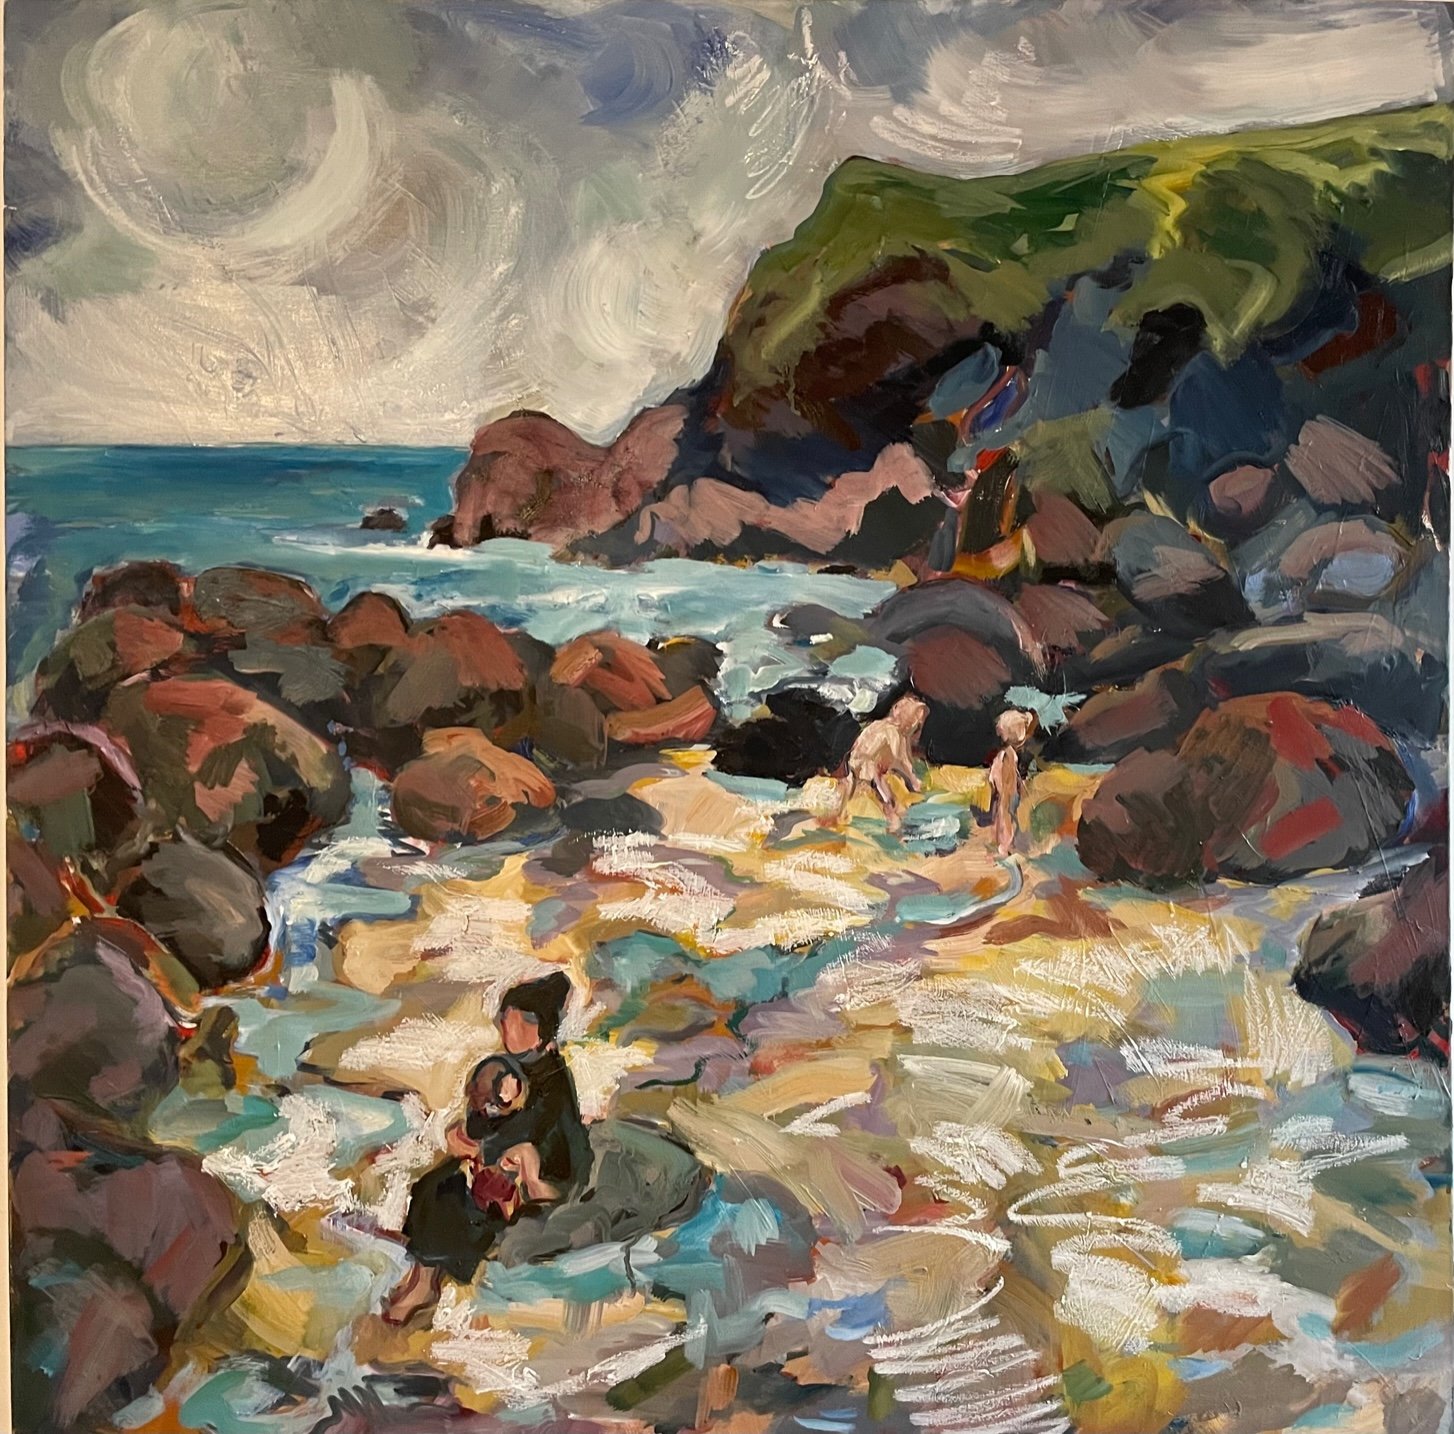 Family on the beach, oil on canvas, 100x100cm, £1450